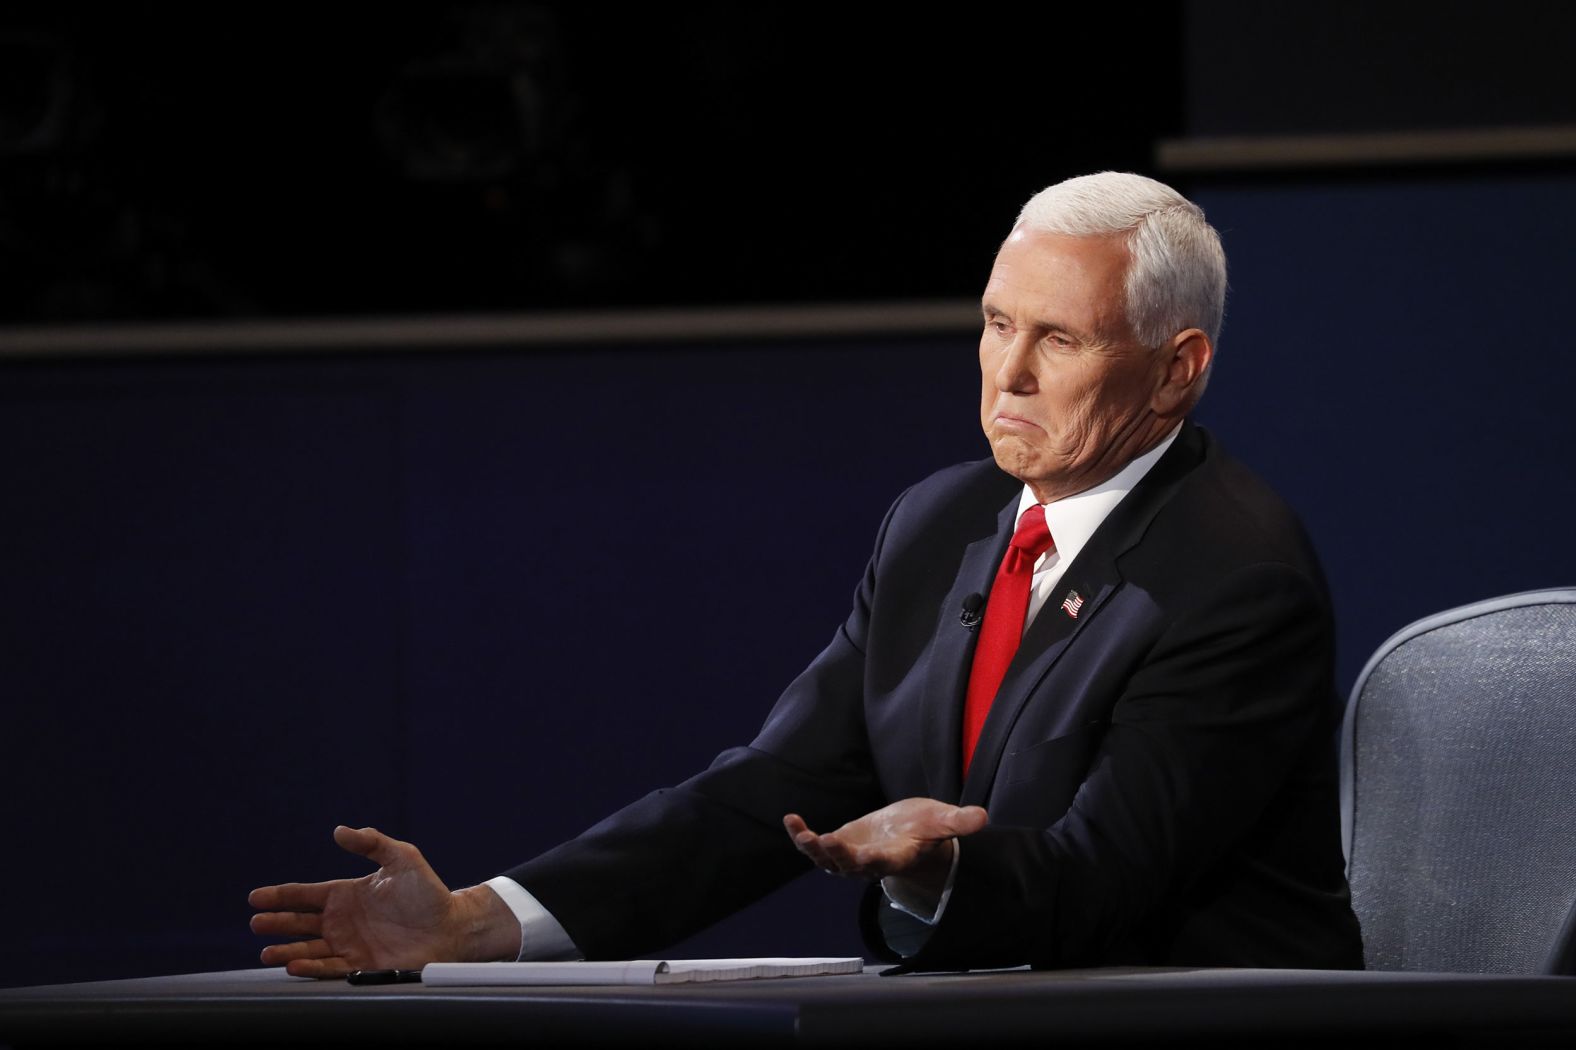 Pence gestures during the debate.